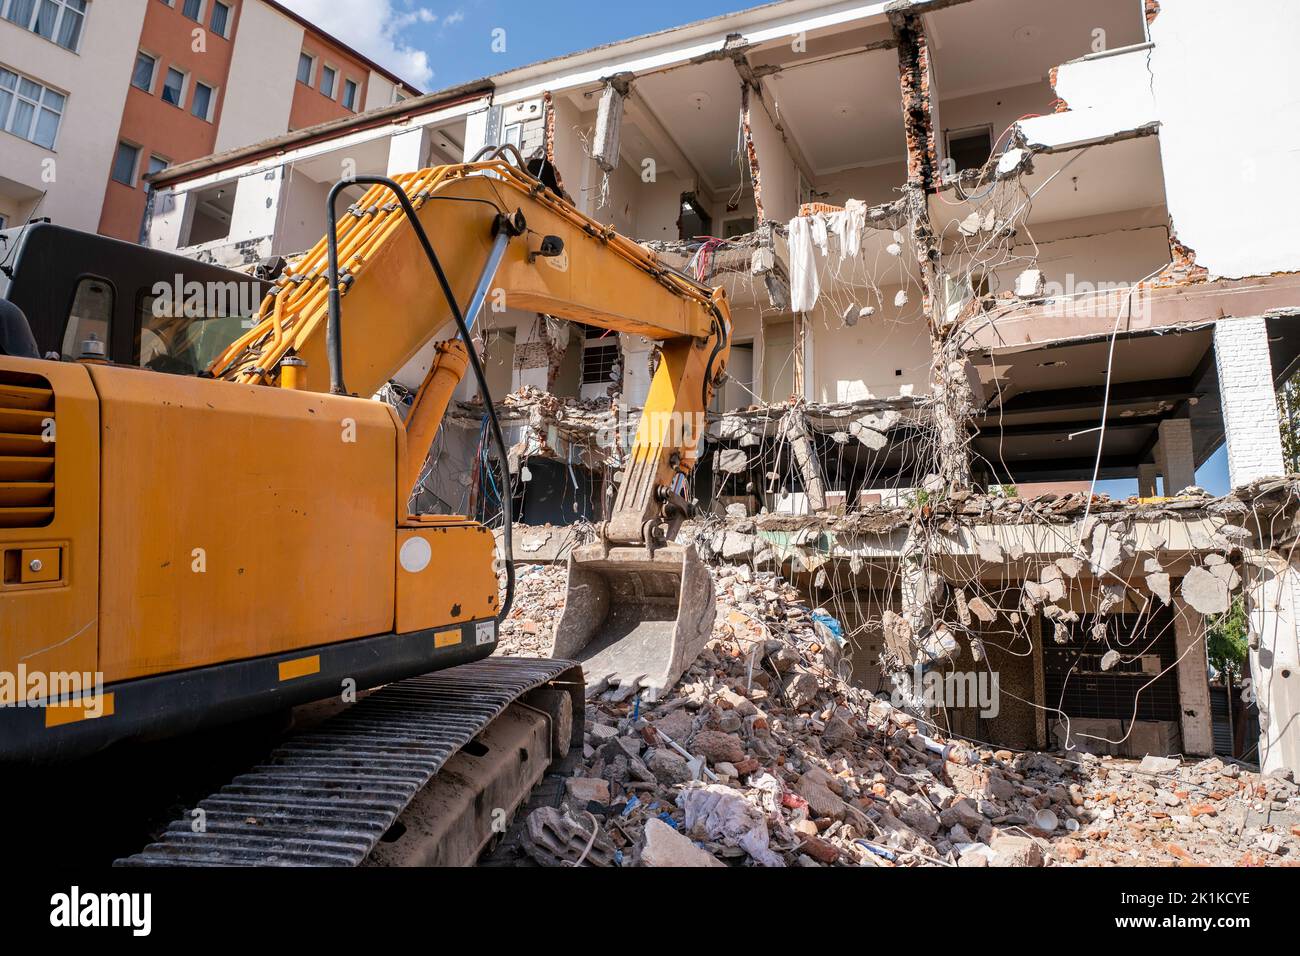 Una pesada máquina de trabajo industrial, digger está destruyendo un viejo edificio abandonado. Fotografía de alta calidad Foto de stock